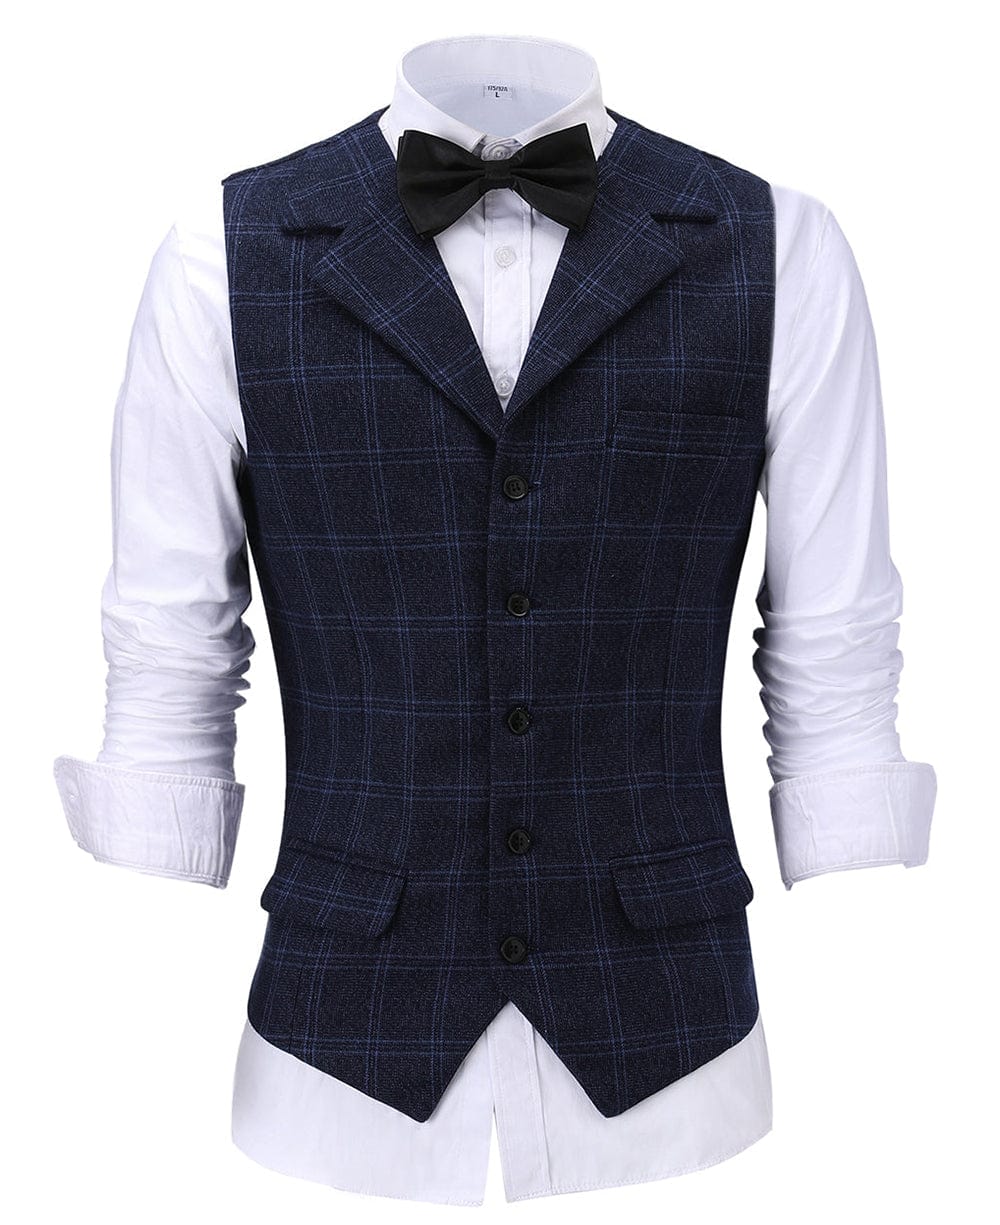 aesido Formal Plaid Notch Lapel Waistcoat Slim Fit Suit Vest